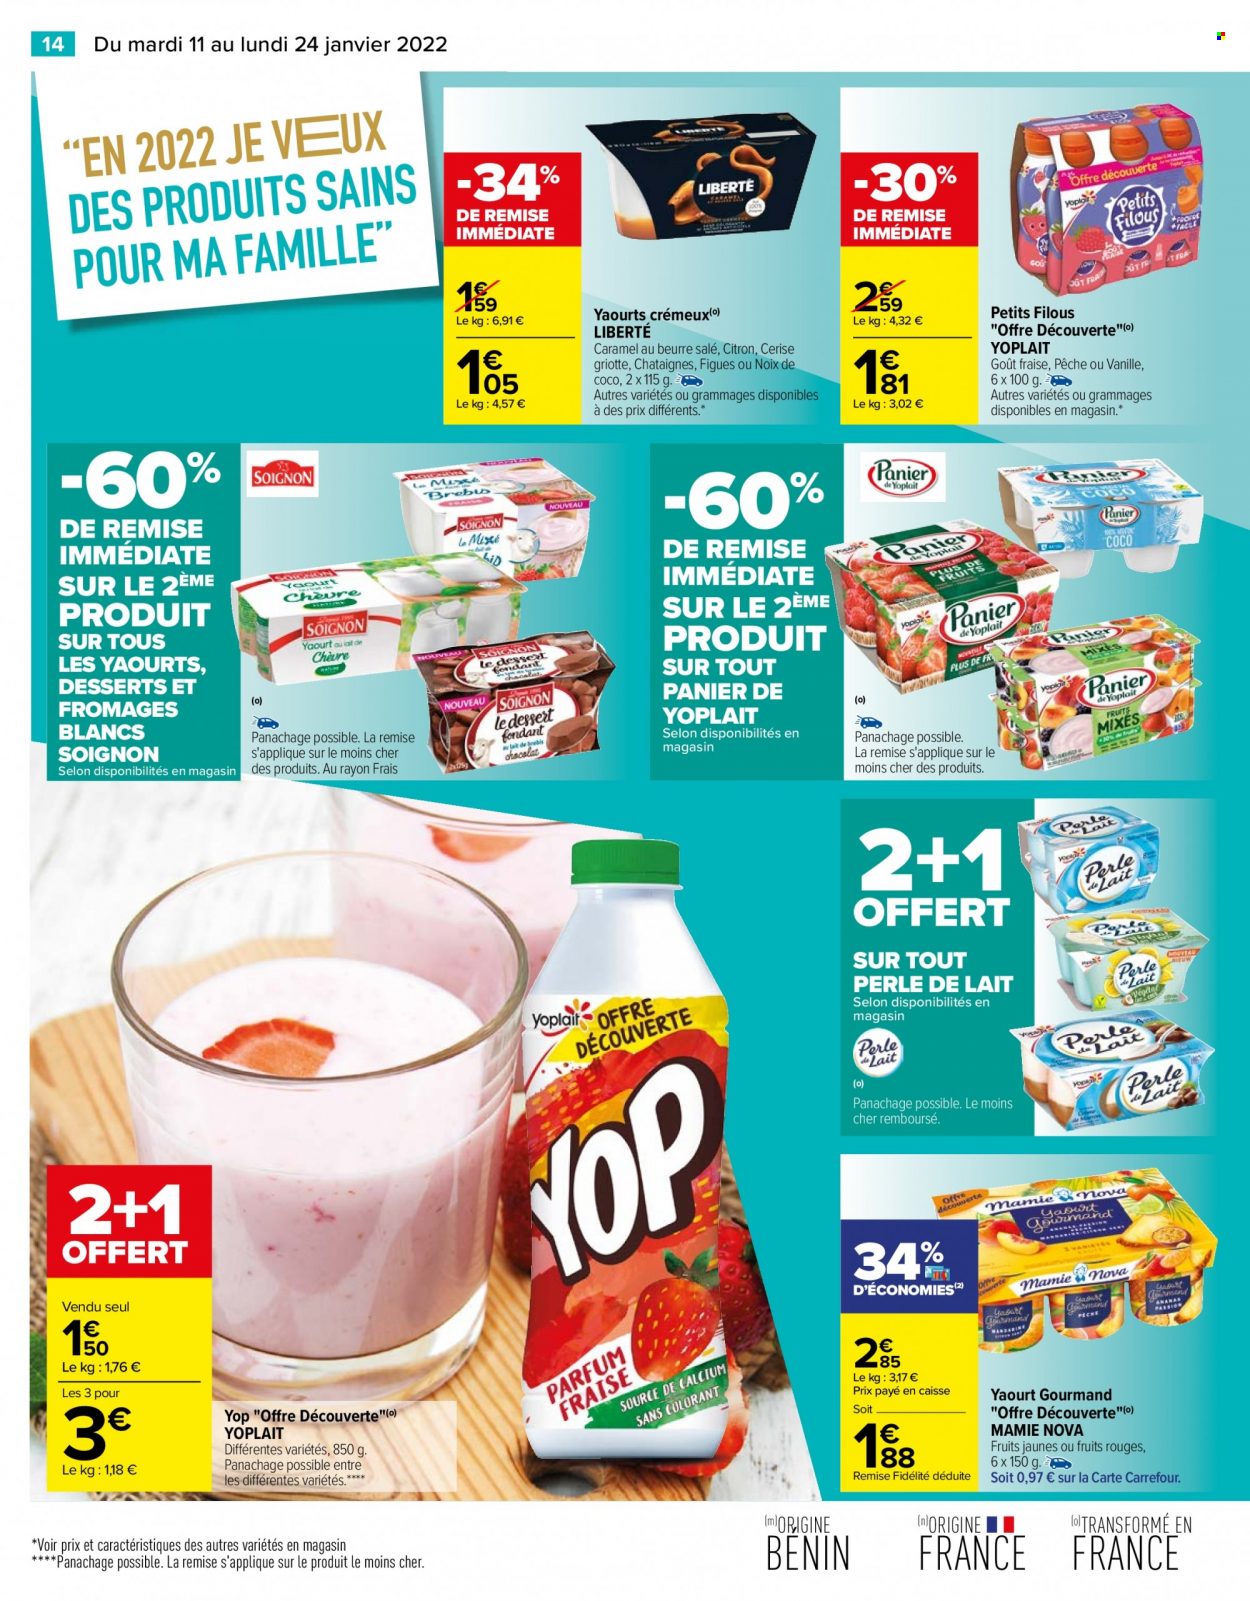 thumbnail - Catalogue Carrefour Hypermarchés - 11/01/2022 - 24/01/2022 - Produits soldés - figue, châtaigne, yaourt, Yoplait, dessert au lait, Mamie Nova, Petits Filous. Page 14.